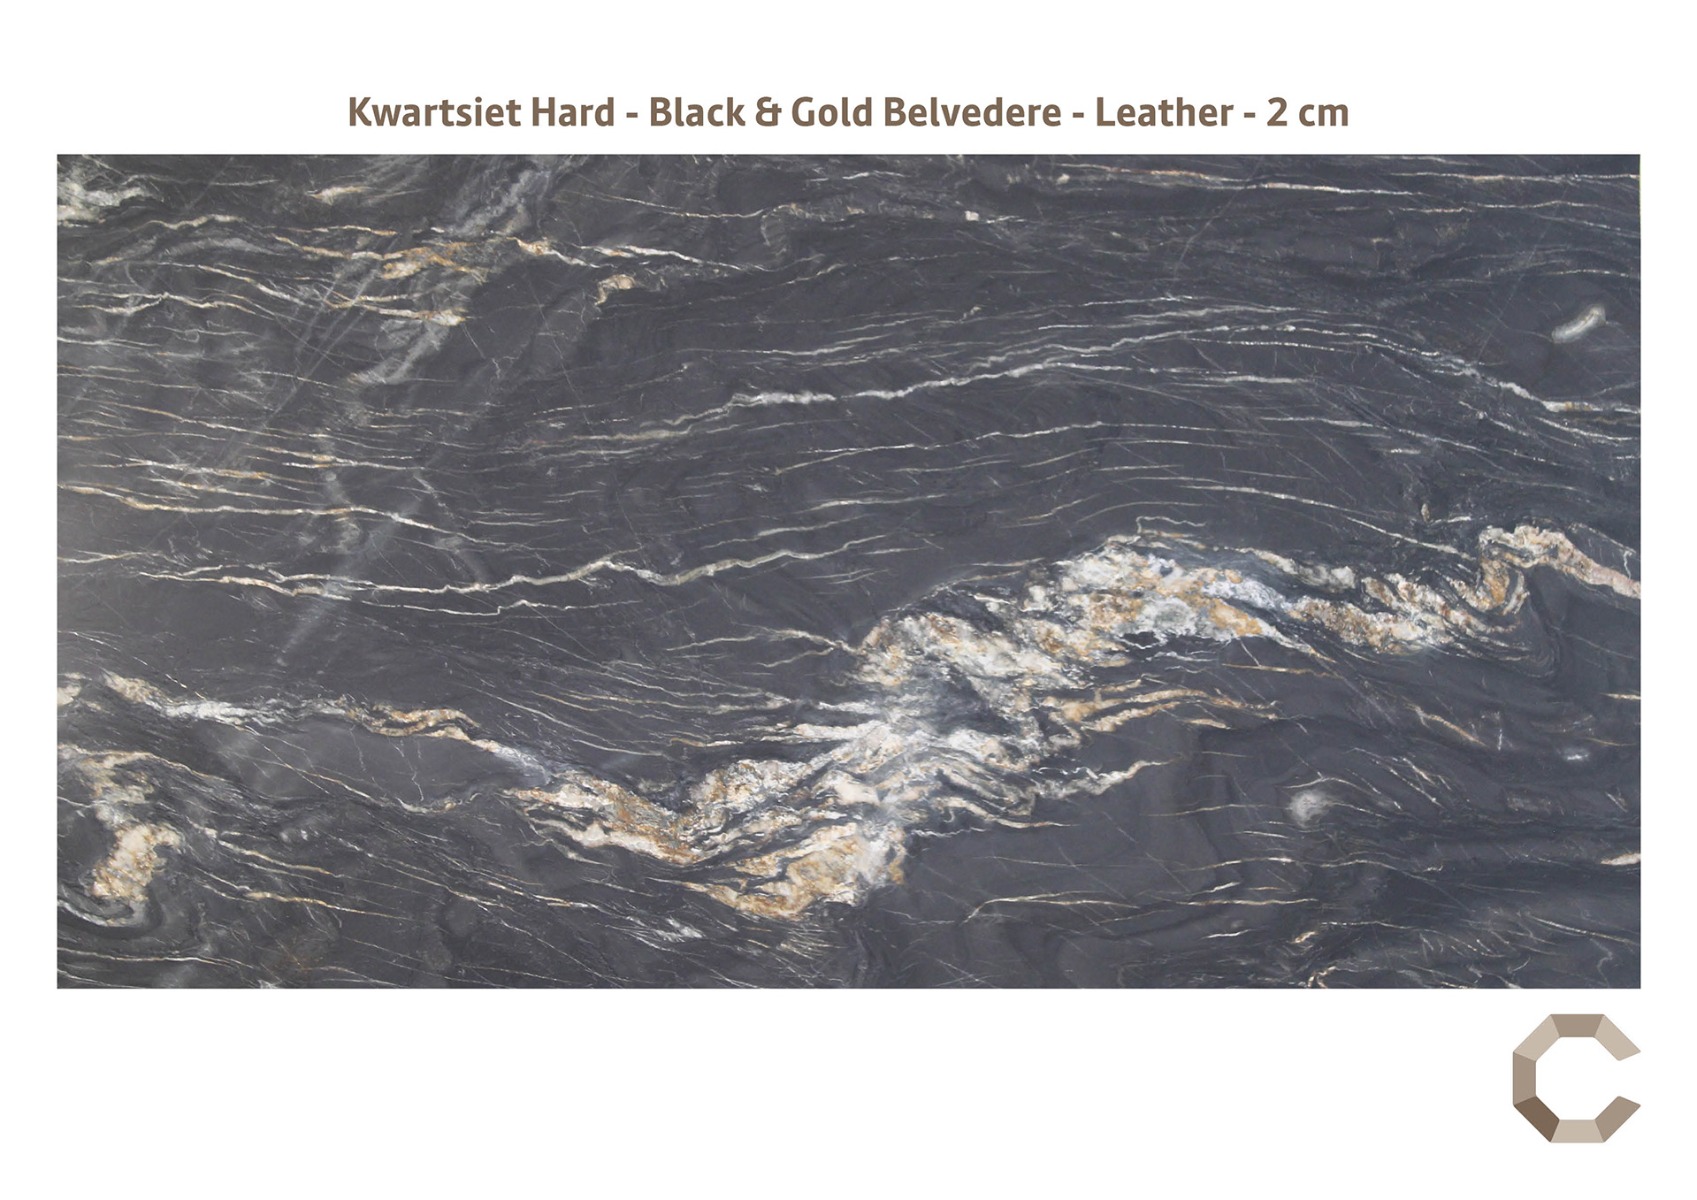 Kwartsiet_Hard_-_Black_Gold_Belvedere_-_Leather